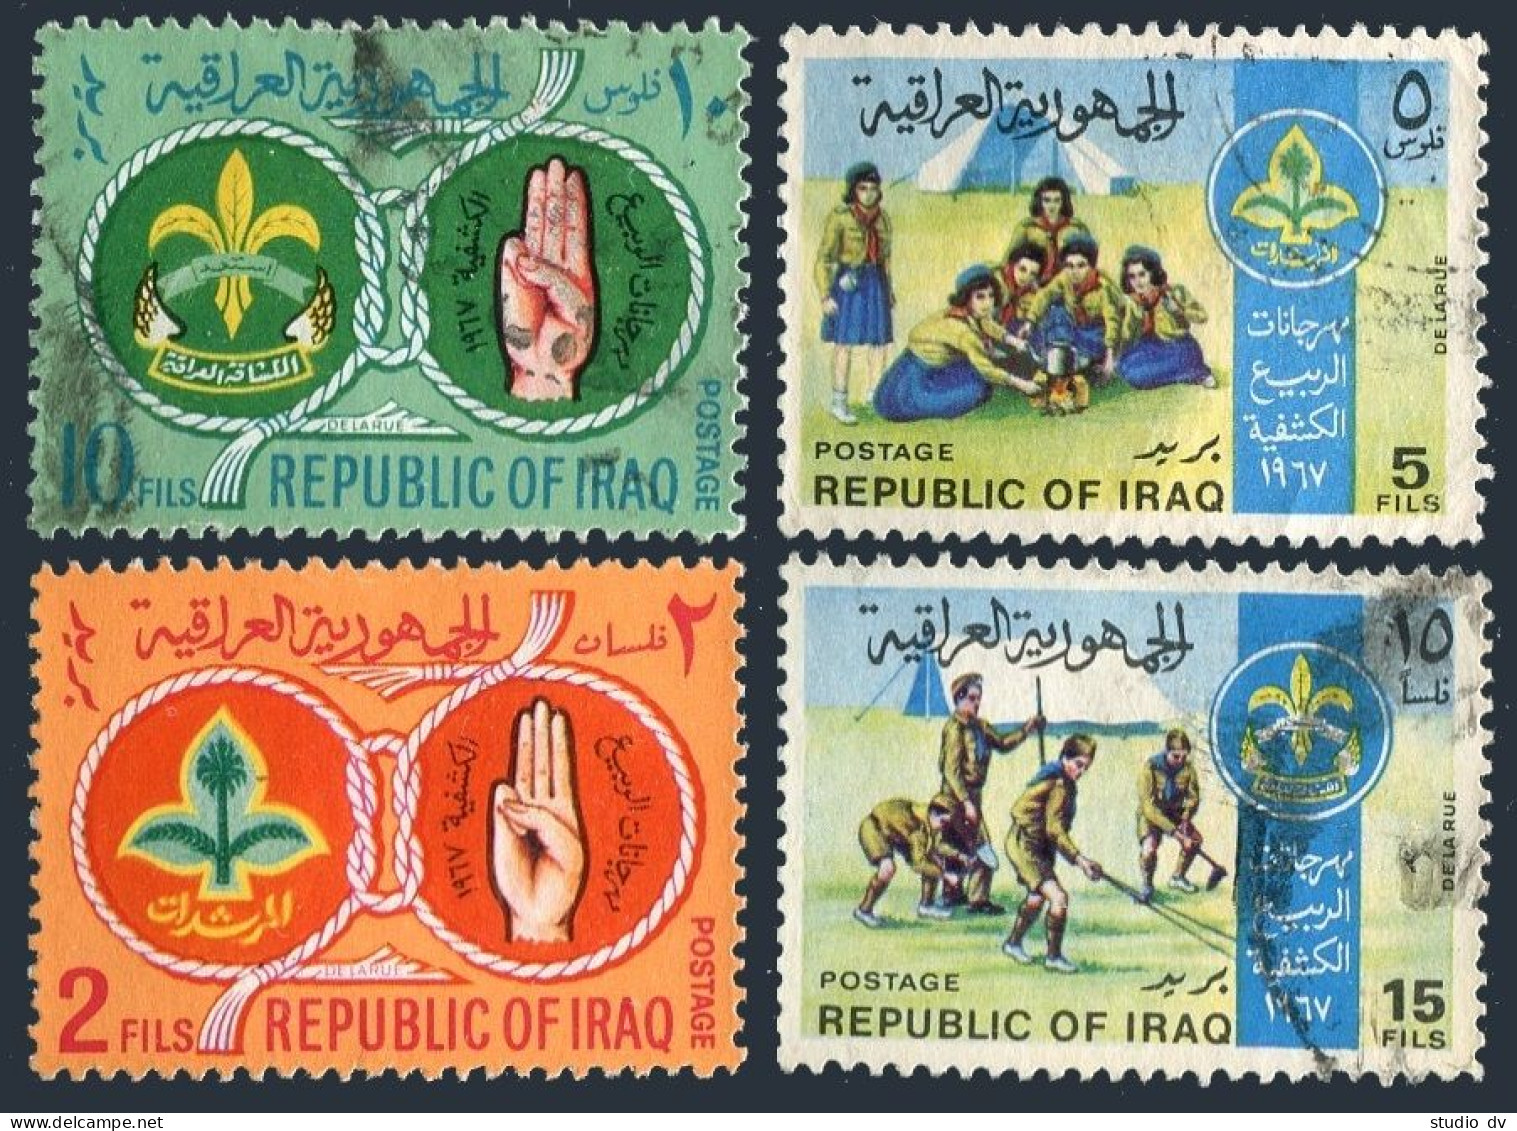 Iraq 457-460, Used. Michel 514-517. Iraqi Boy, Girl Scouts Movement, 1967. - Iraq